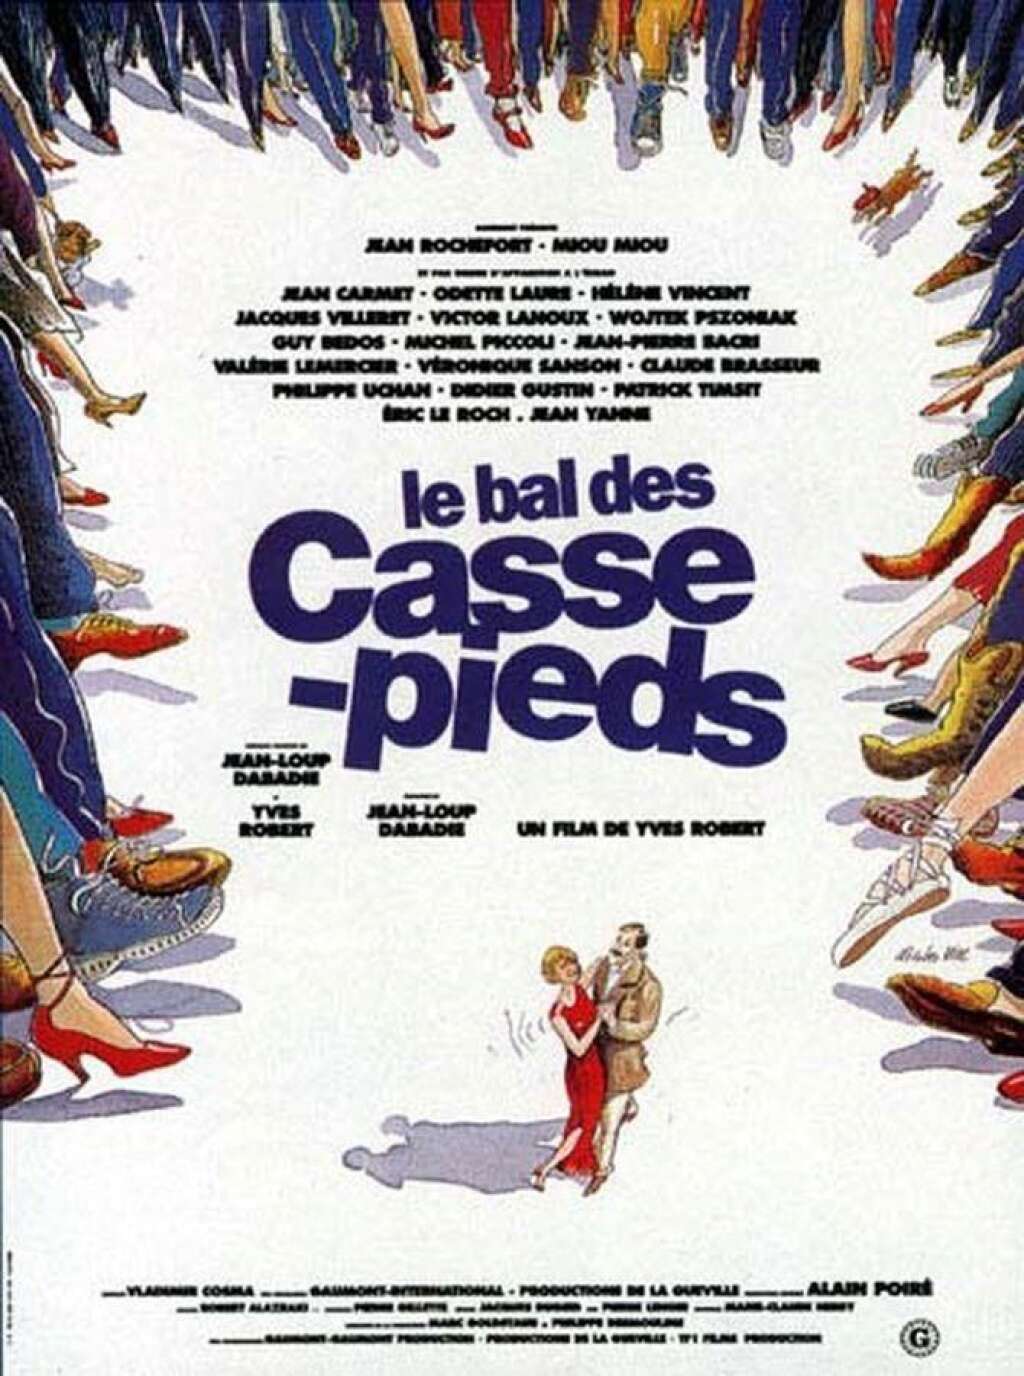 "Le bal des casse-pieds" de Yves Robert (1992) - Jean-Loup Dabadie a également scénarisé "Le bal des casse-pieds" de Yves Robert.